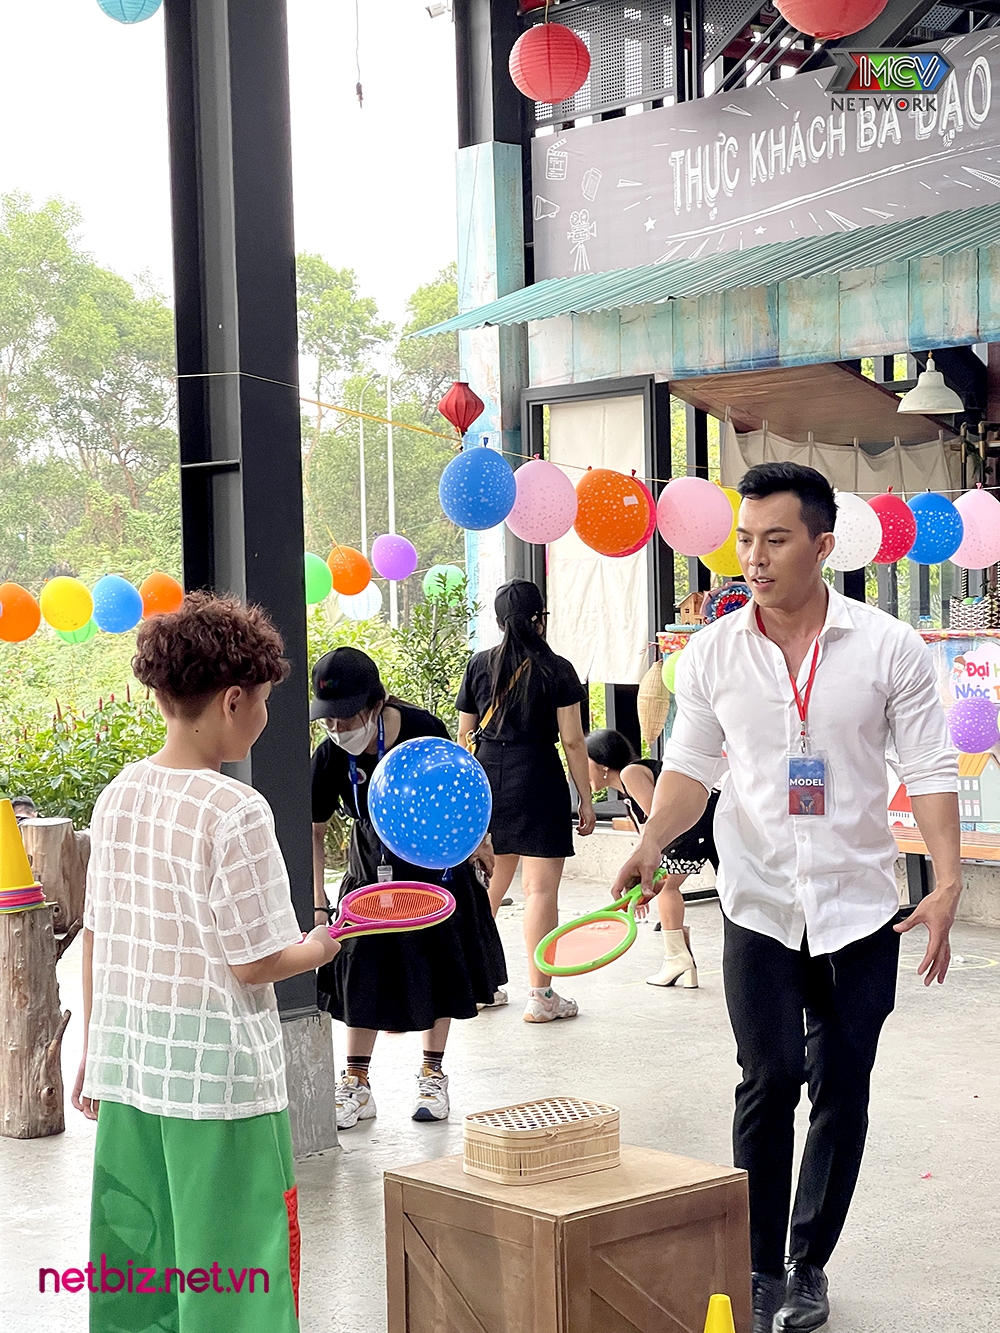 'Đại hội nhóc trùm' được cả hoa hậu H'Hen Niê, Hương Giang ủng hộ